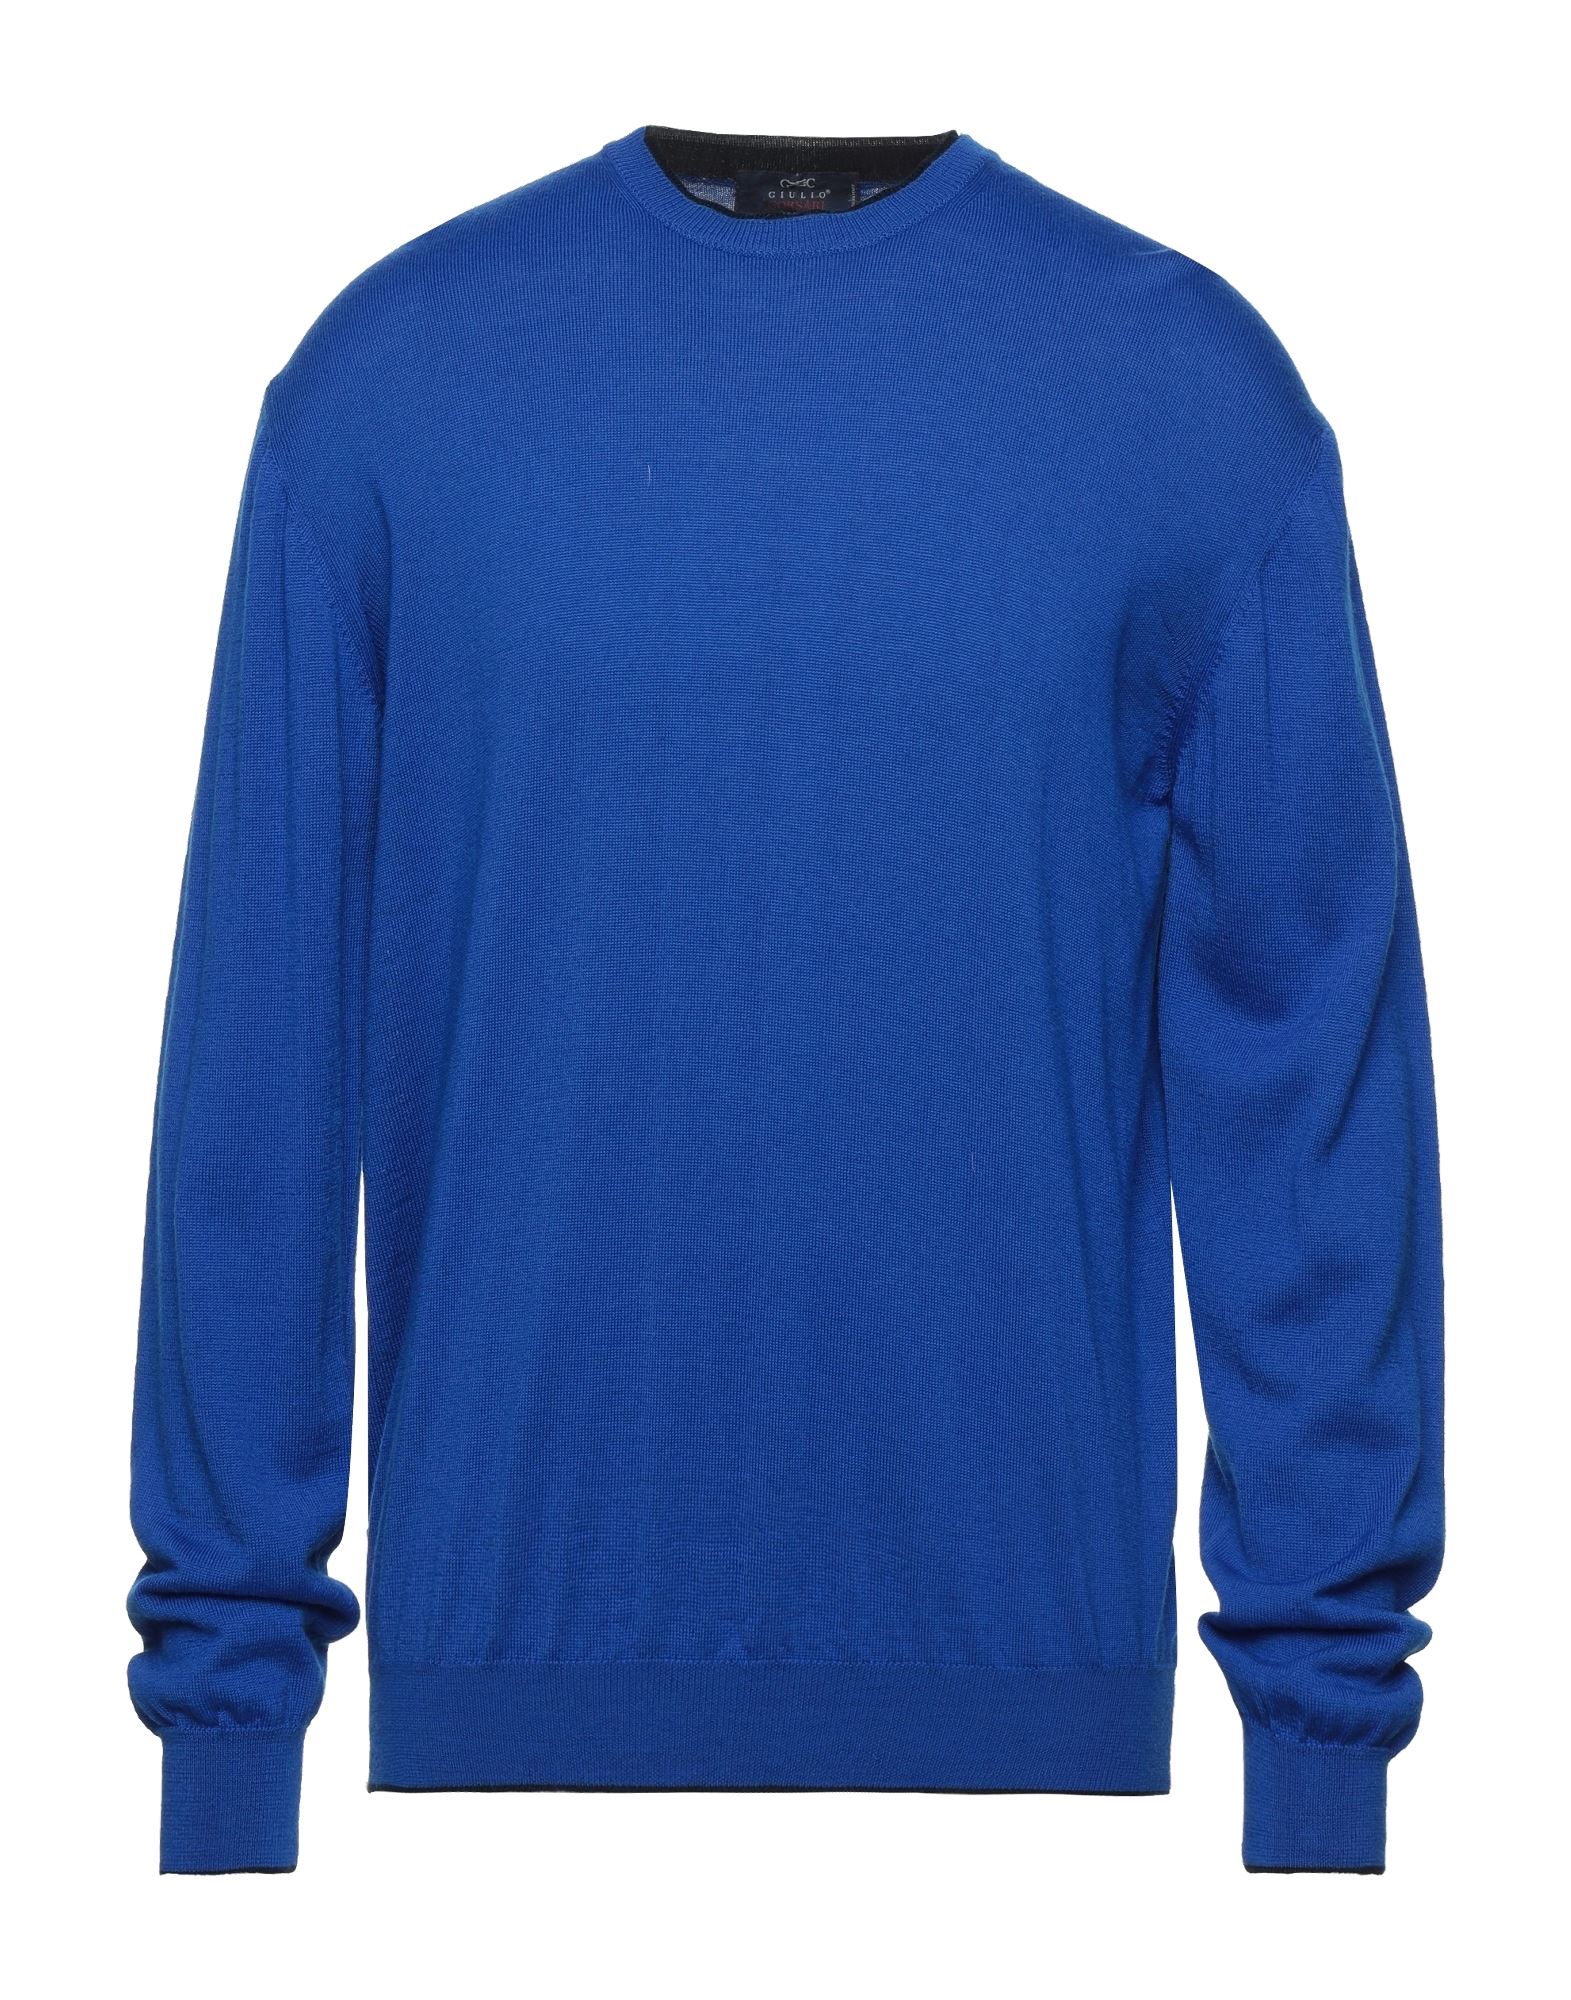 Giulio Corsari Sweaters In Bright Blue